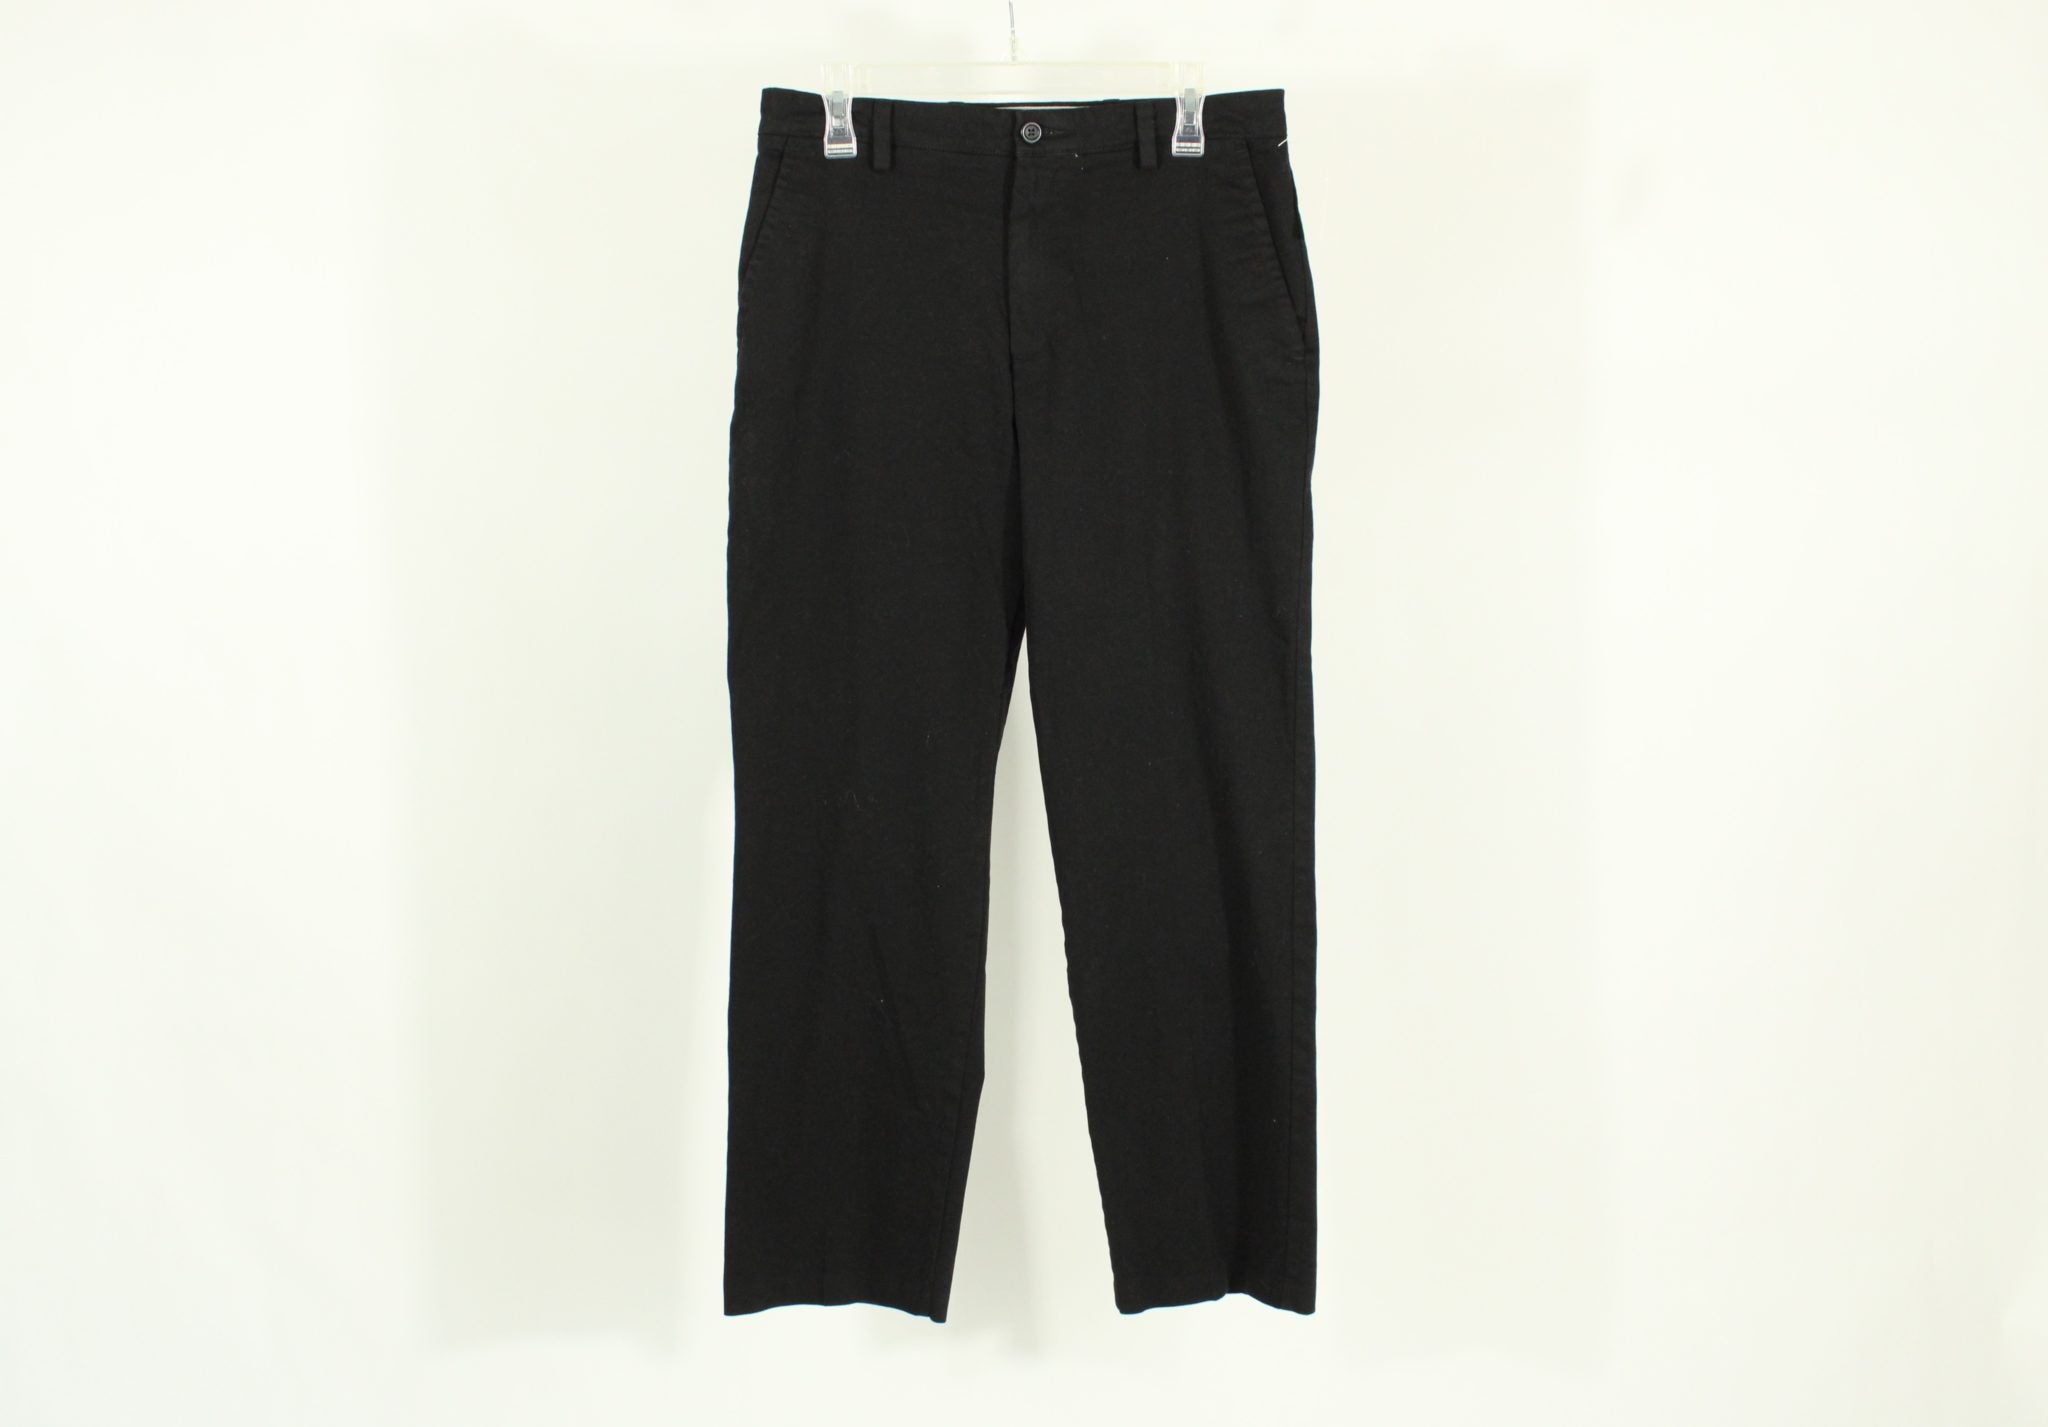 Dockers Classic Fit Black Pants | Size 32X30